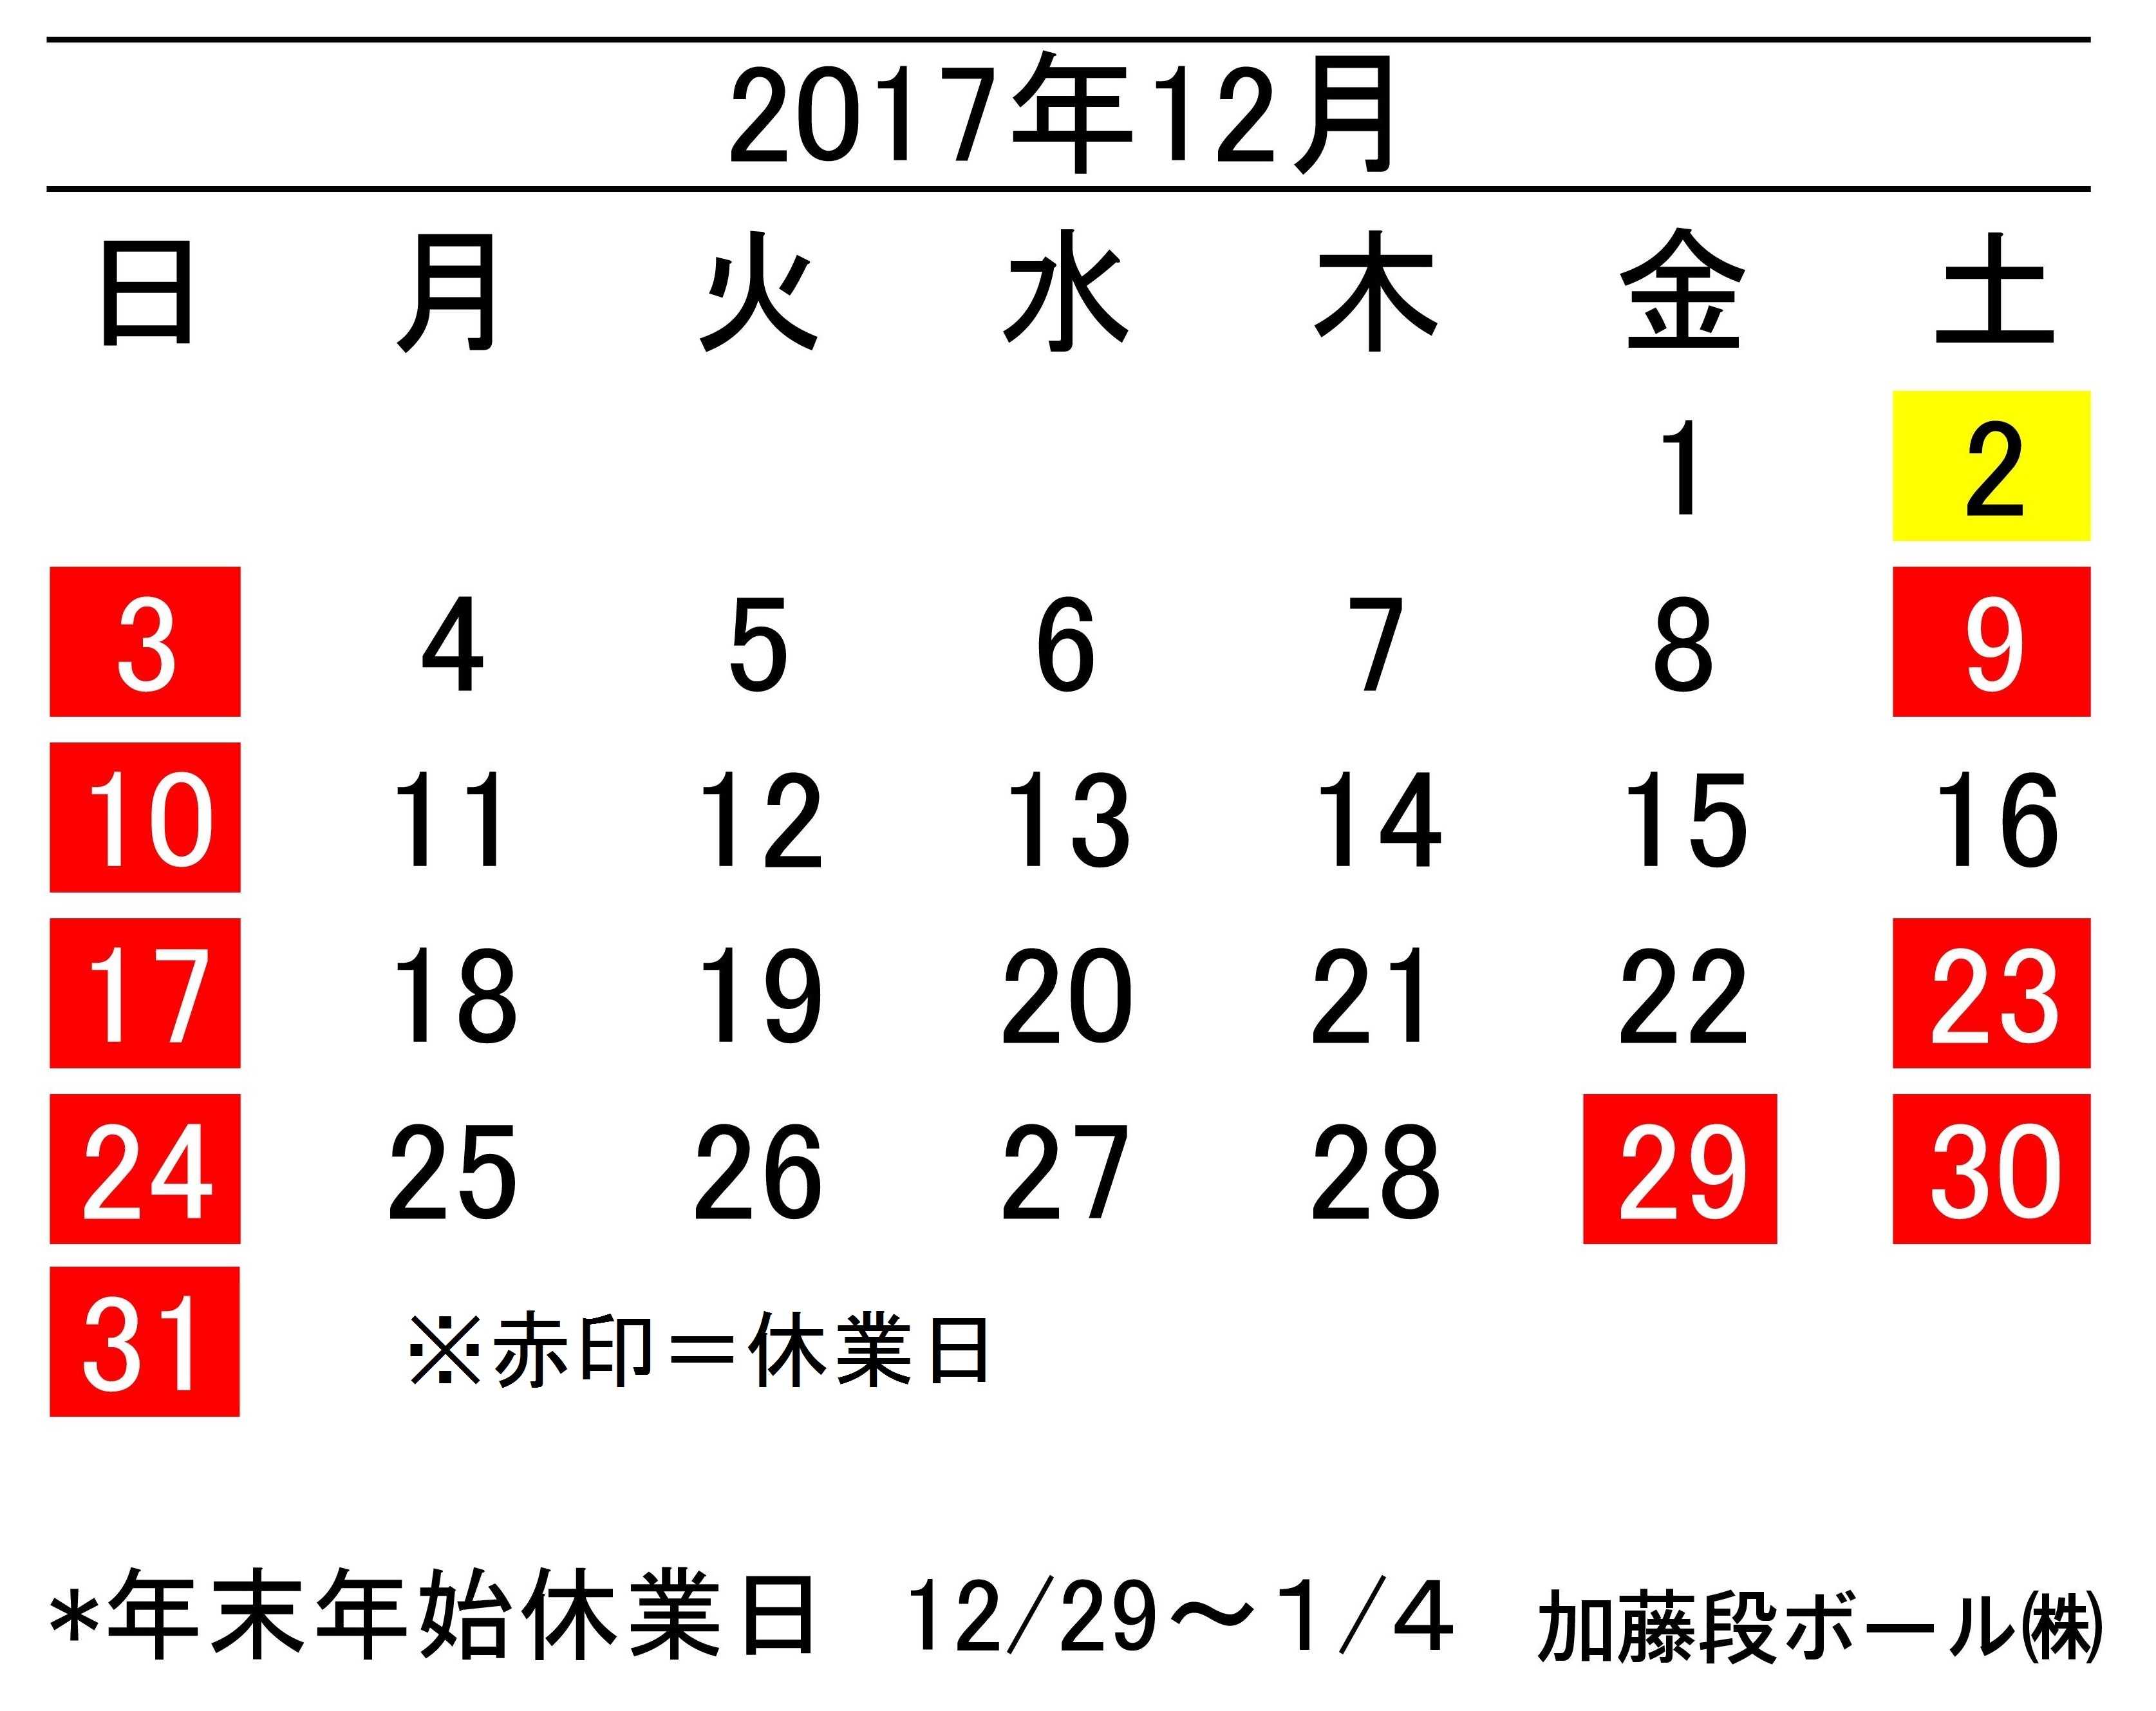 17年12月度営業日カレンダー 加藤段ボール株式会社 千葉 福島 神奈川を中心に段ボール製品 梱包資材の製造と販売